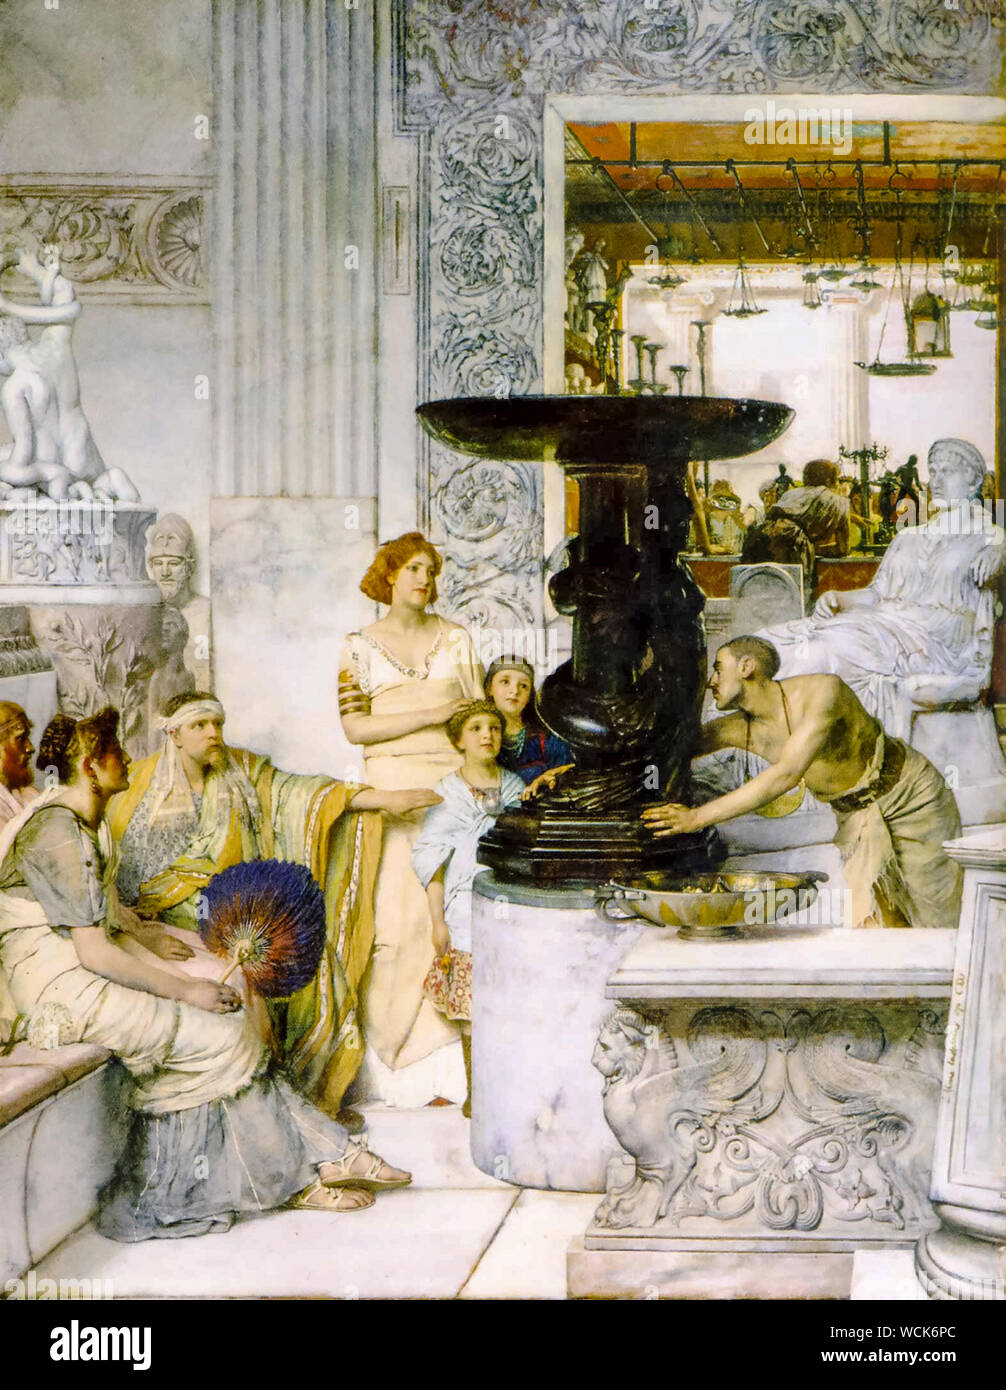 Lawrence Alma Tadema, La Galería de escultura, pintura, 1874-1875 Foto de stock